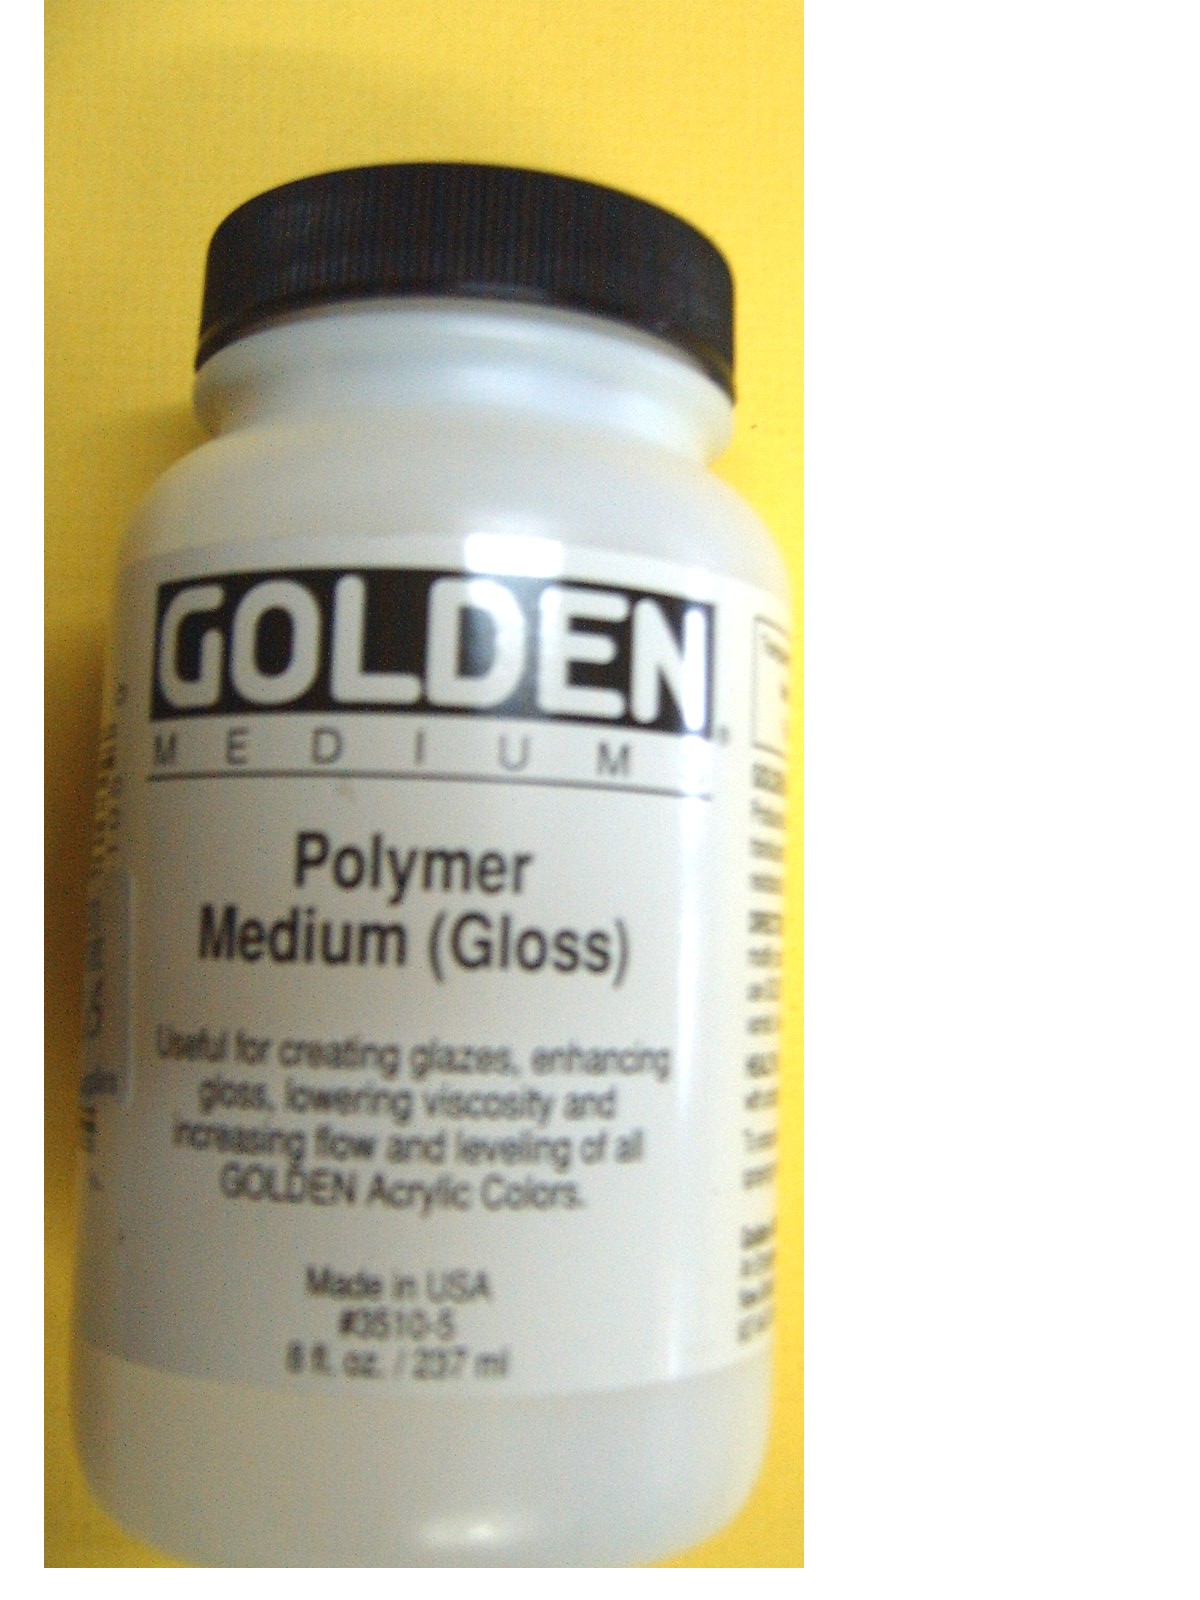 Golden Polymer Medium Gloss